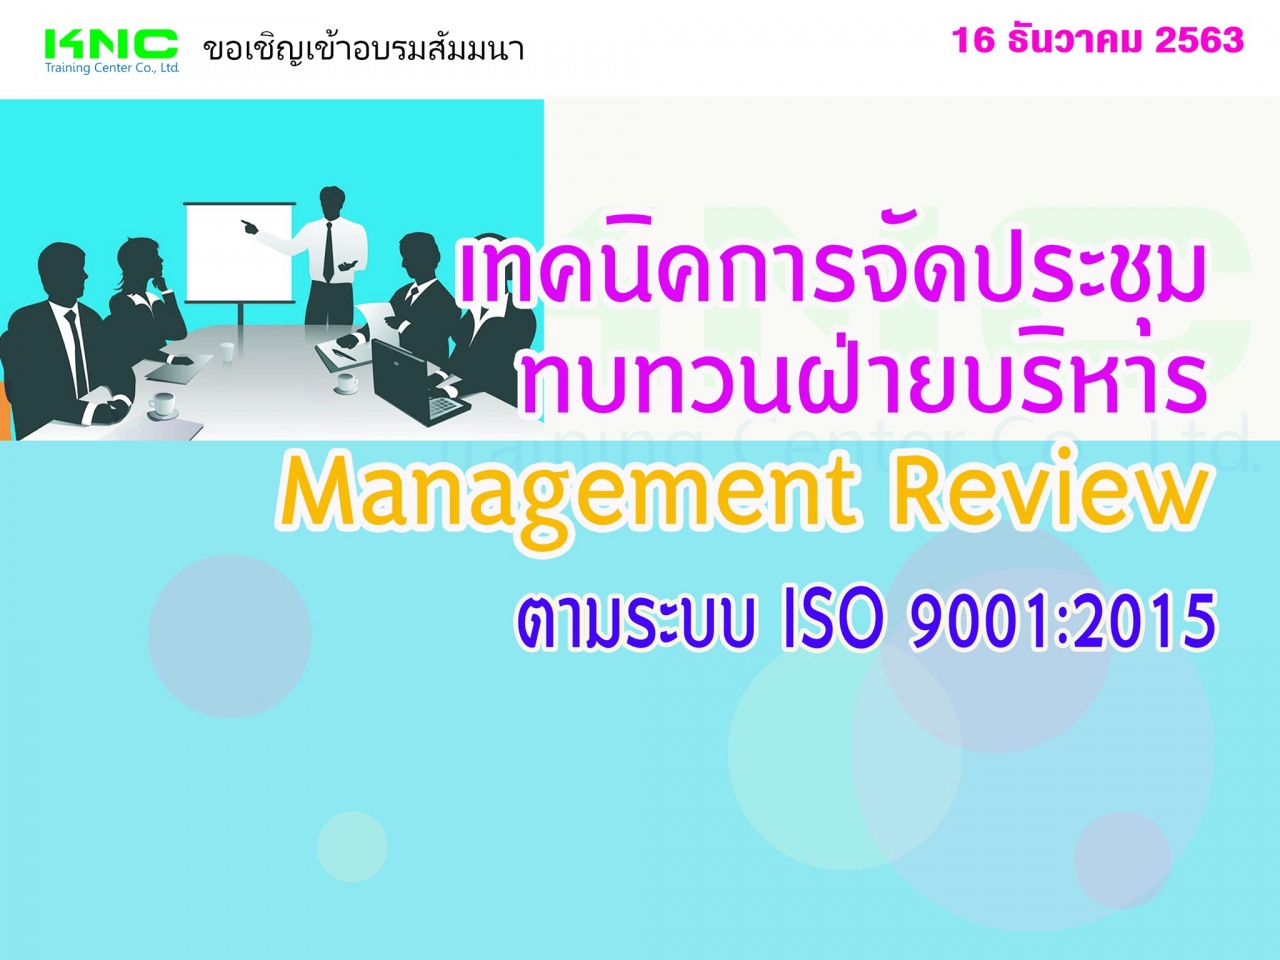 เทคนิคการจัดประชุมทบทวนฝ่ายบริหาร Management Review ตามระบบ ISO 9001:2015